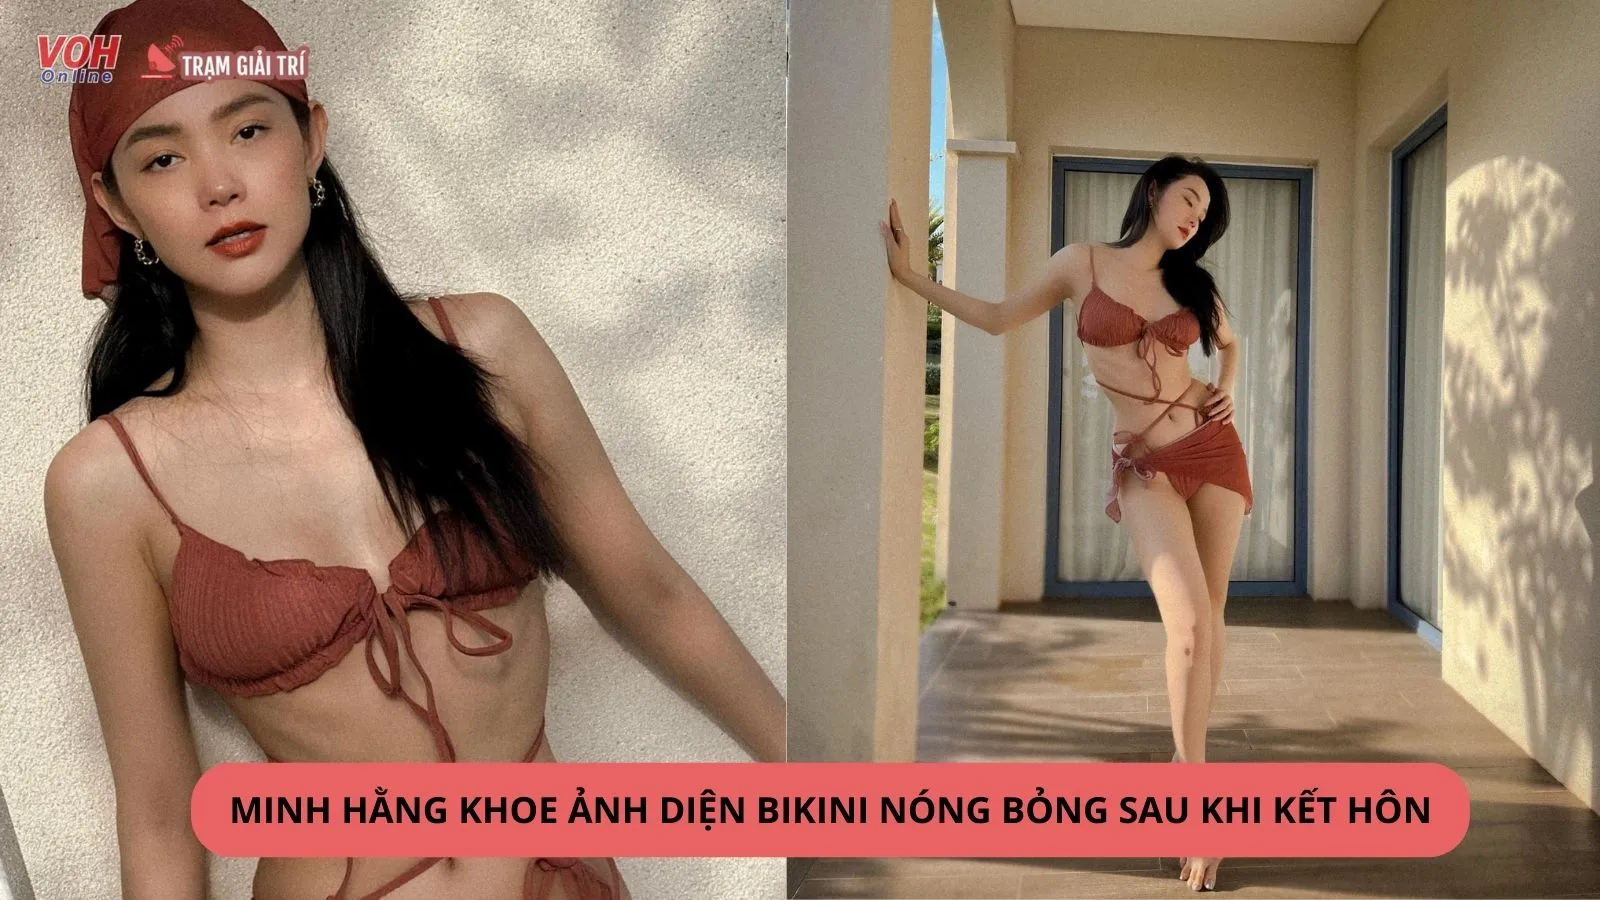 Minh Hằng khoe ảnh diện bikini nóng bỏng trong chuyến nghỉ dưỡng đầu tiên sau đám cưới